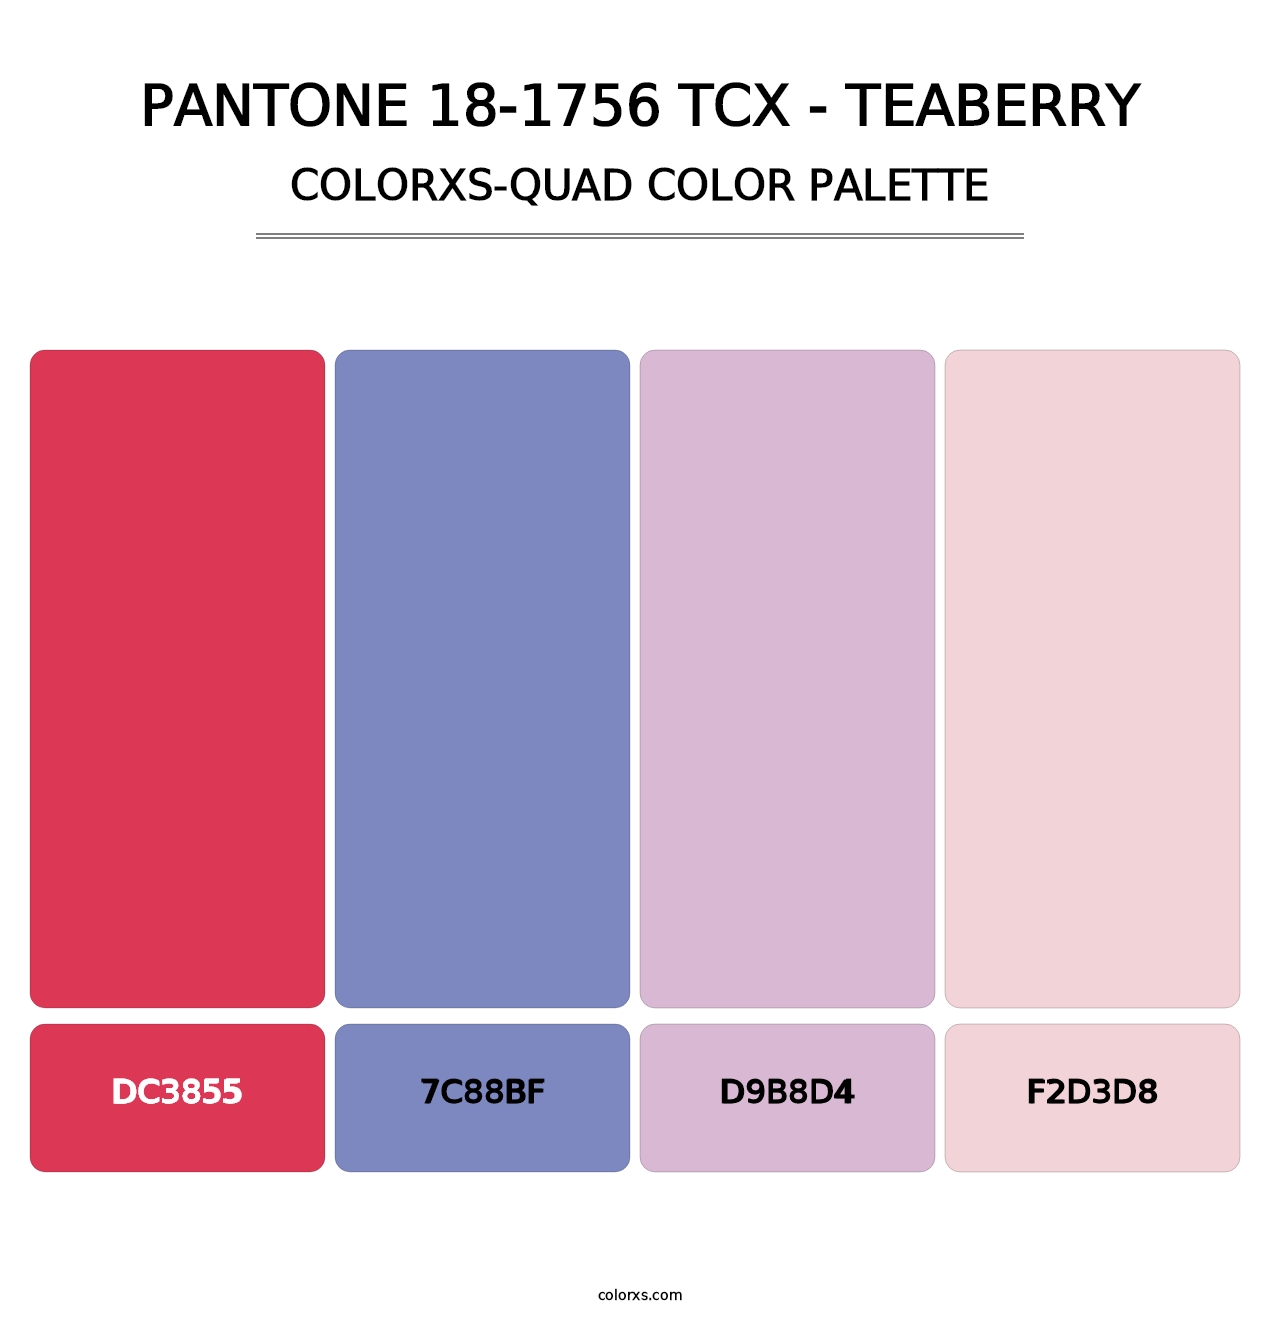 PANTONE 18-1756 TCX - Teaberry - Colorxs Quad Palette